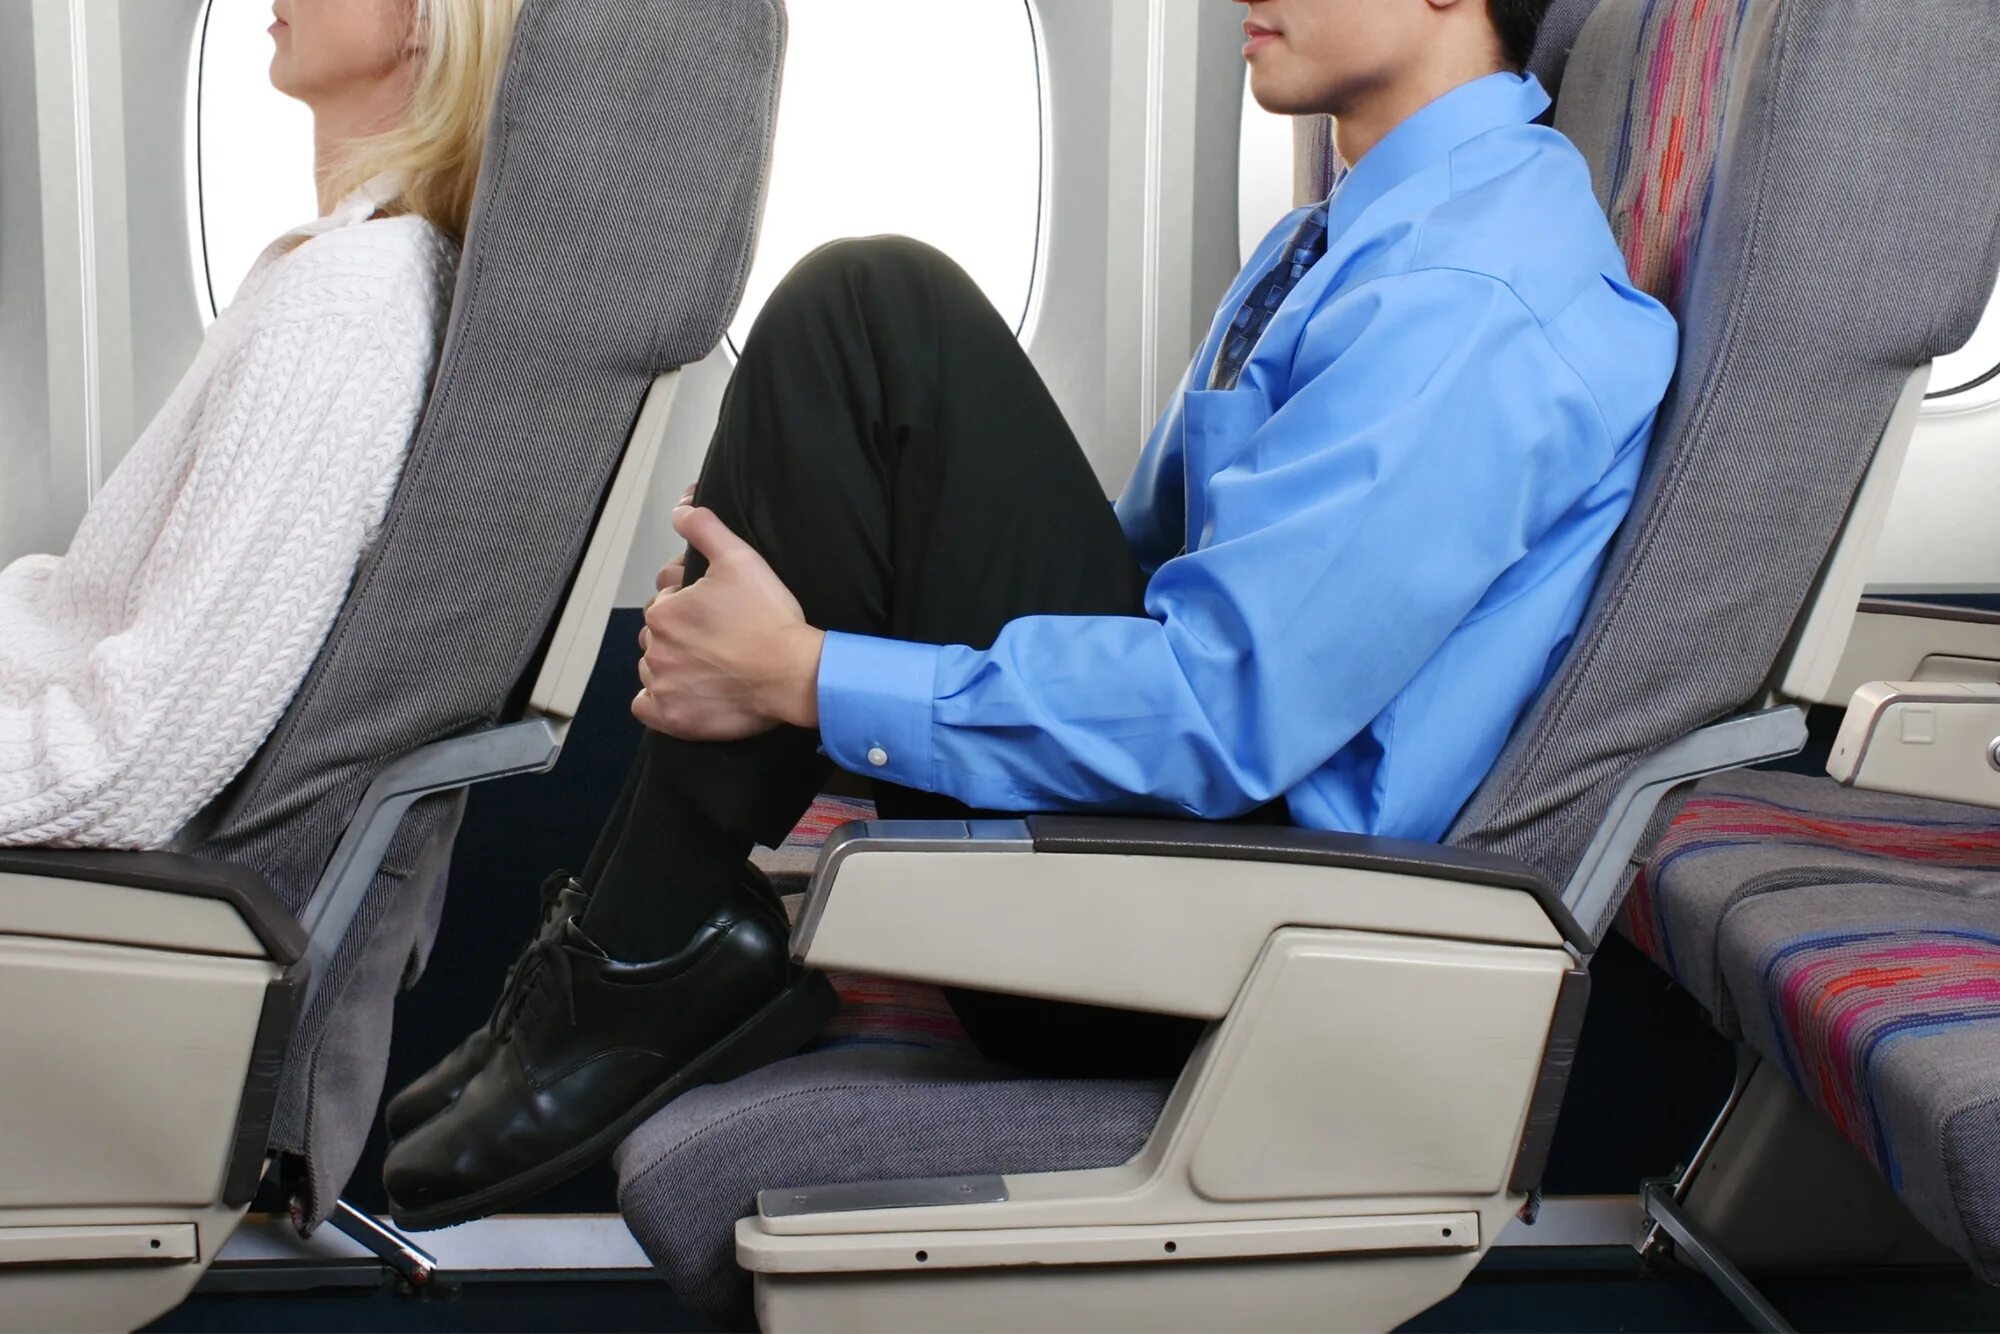 Спинка кресла в самолете. Кресло "самолет". Пассажирские сиденья в самолете. Неудобные кресла в самолете.